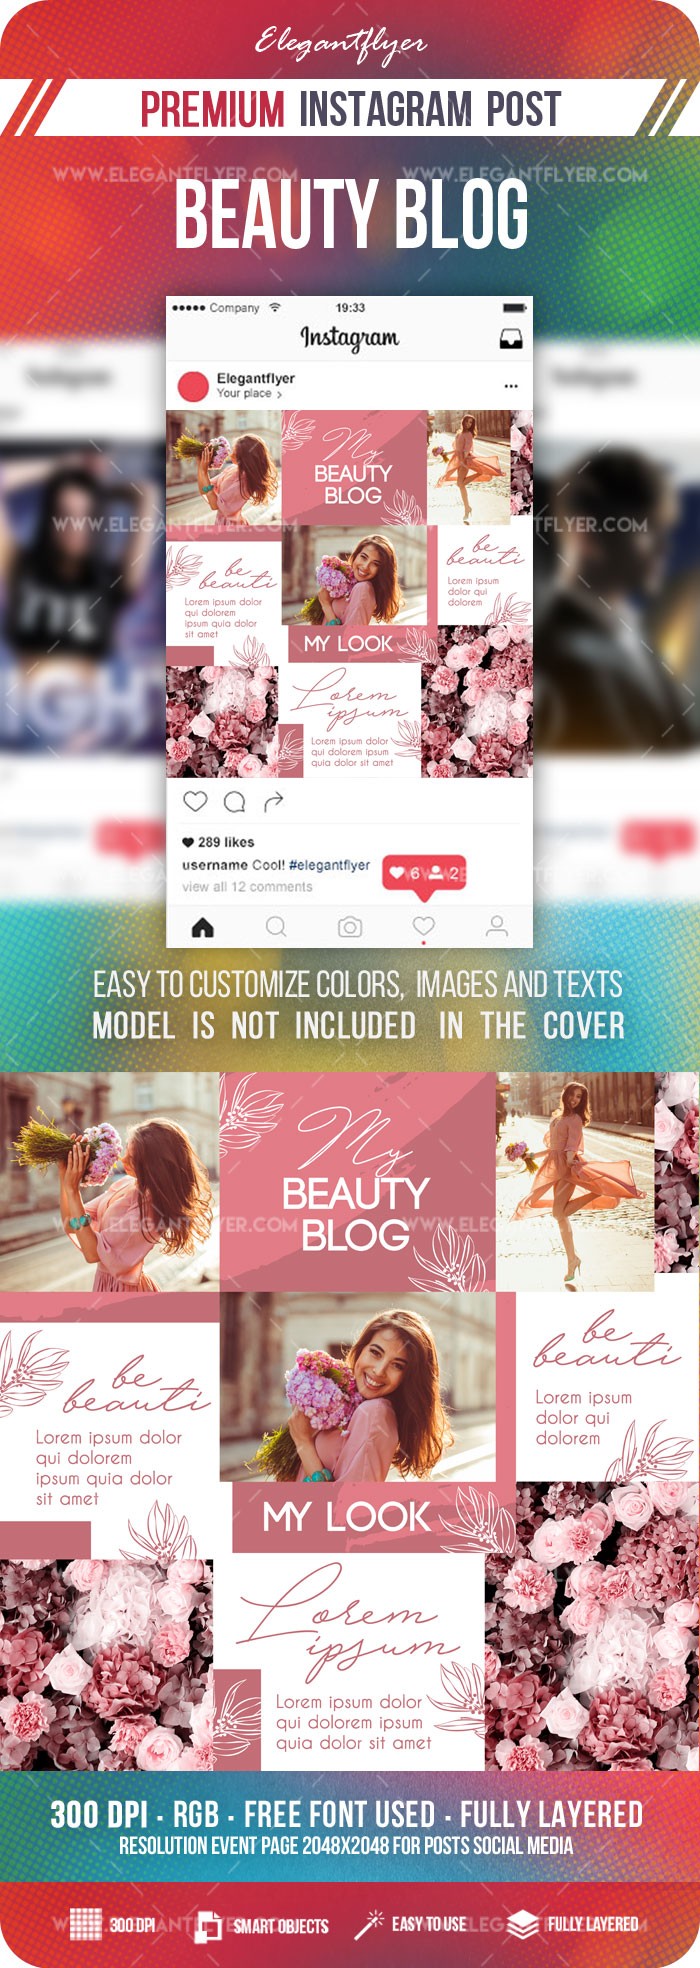 Blog de belleza Instagram by ElegantFlyer